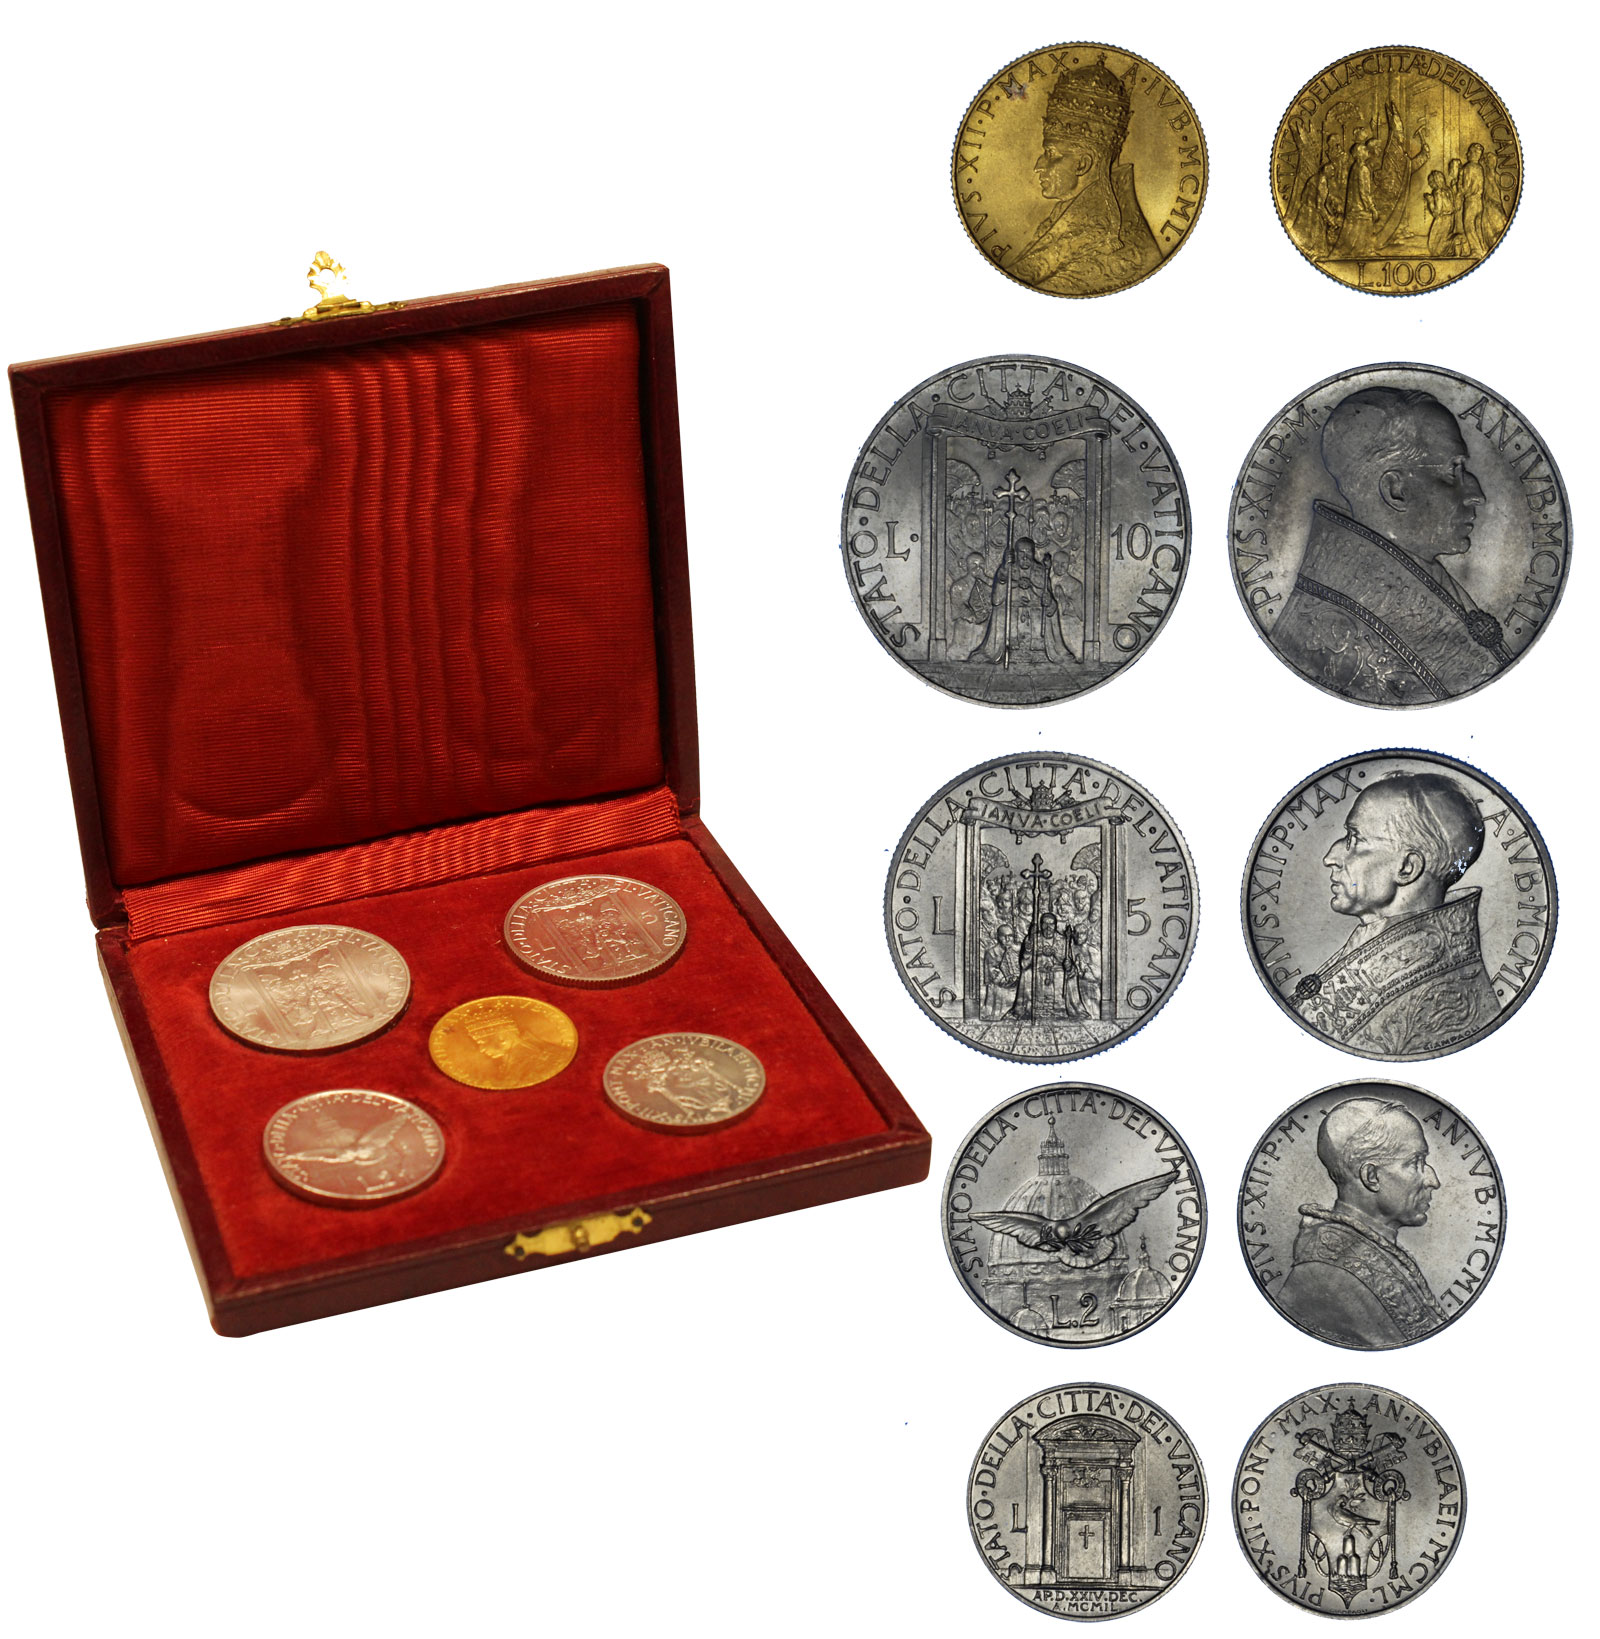  "Papa Pio XII" - Serie completa da Lire 100 di gr. 5,19 in oro 900/000 e 5 monete da L. 1- 2 - 5 - 10 in nickel  - conf. originale 